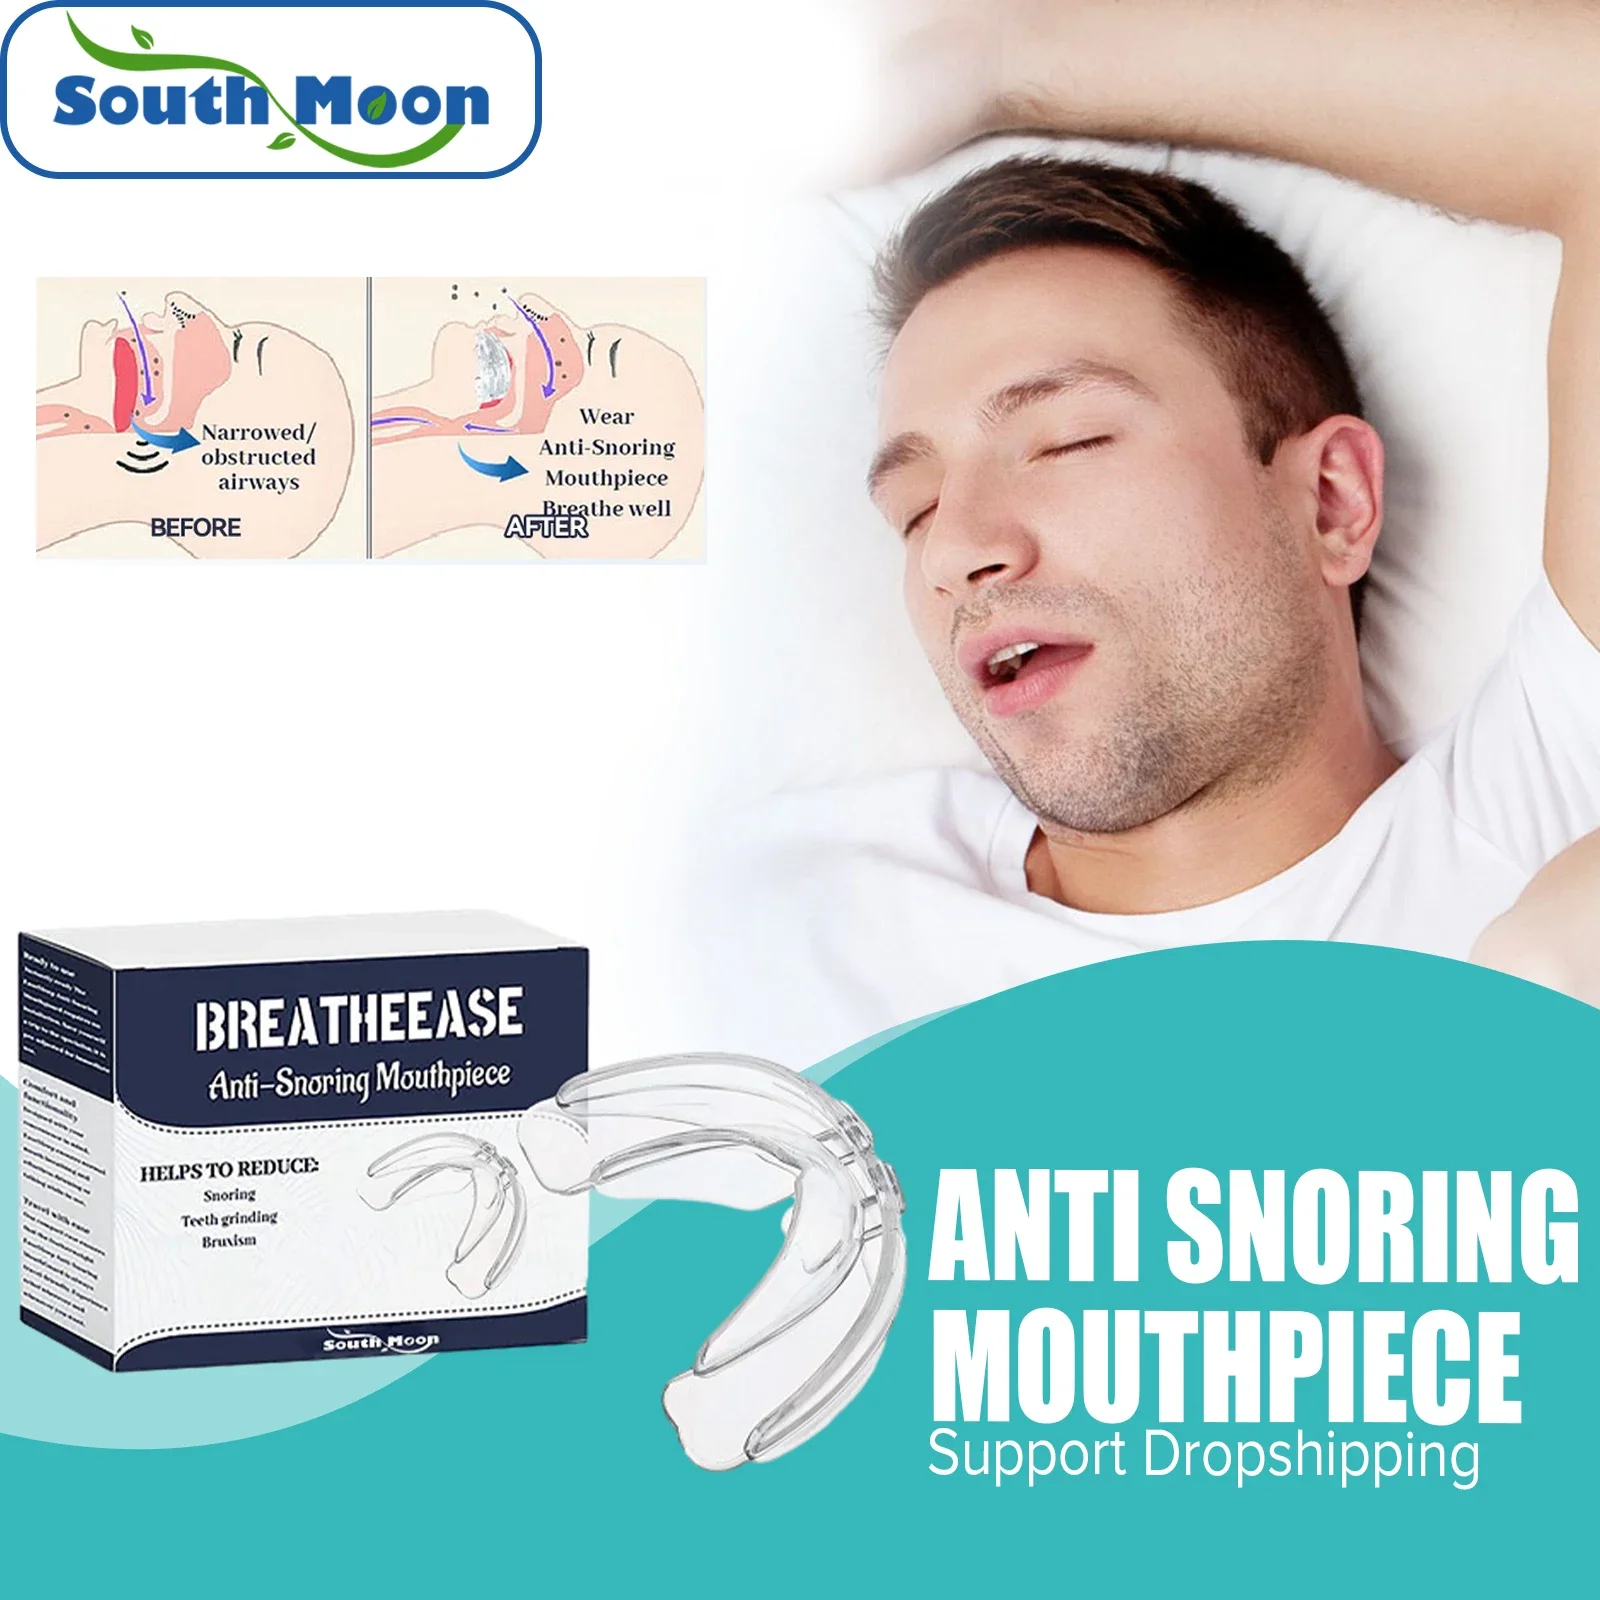 

Защита рта от храпа улучшает качество сна предотвращает храп облегчение зубов бруксизм удержание зубов при апноэ во время сна мундштук